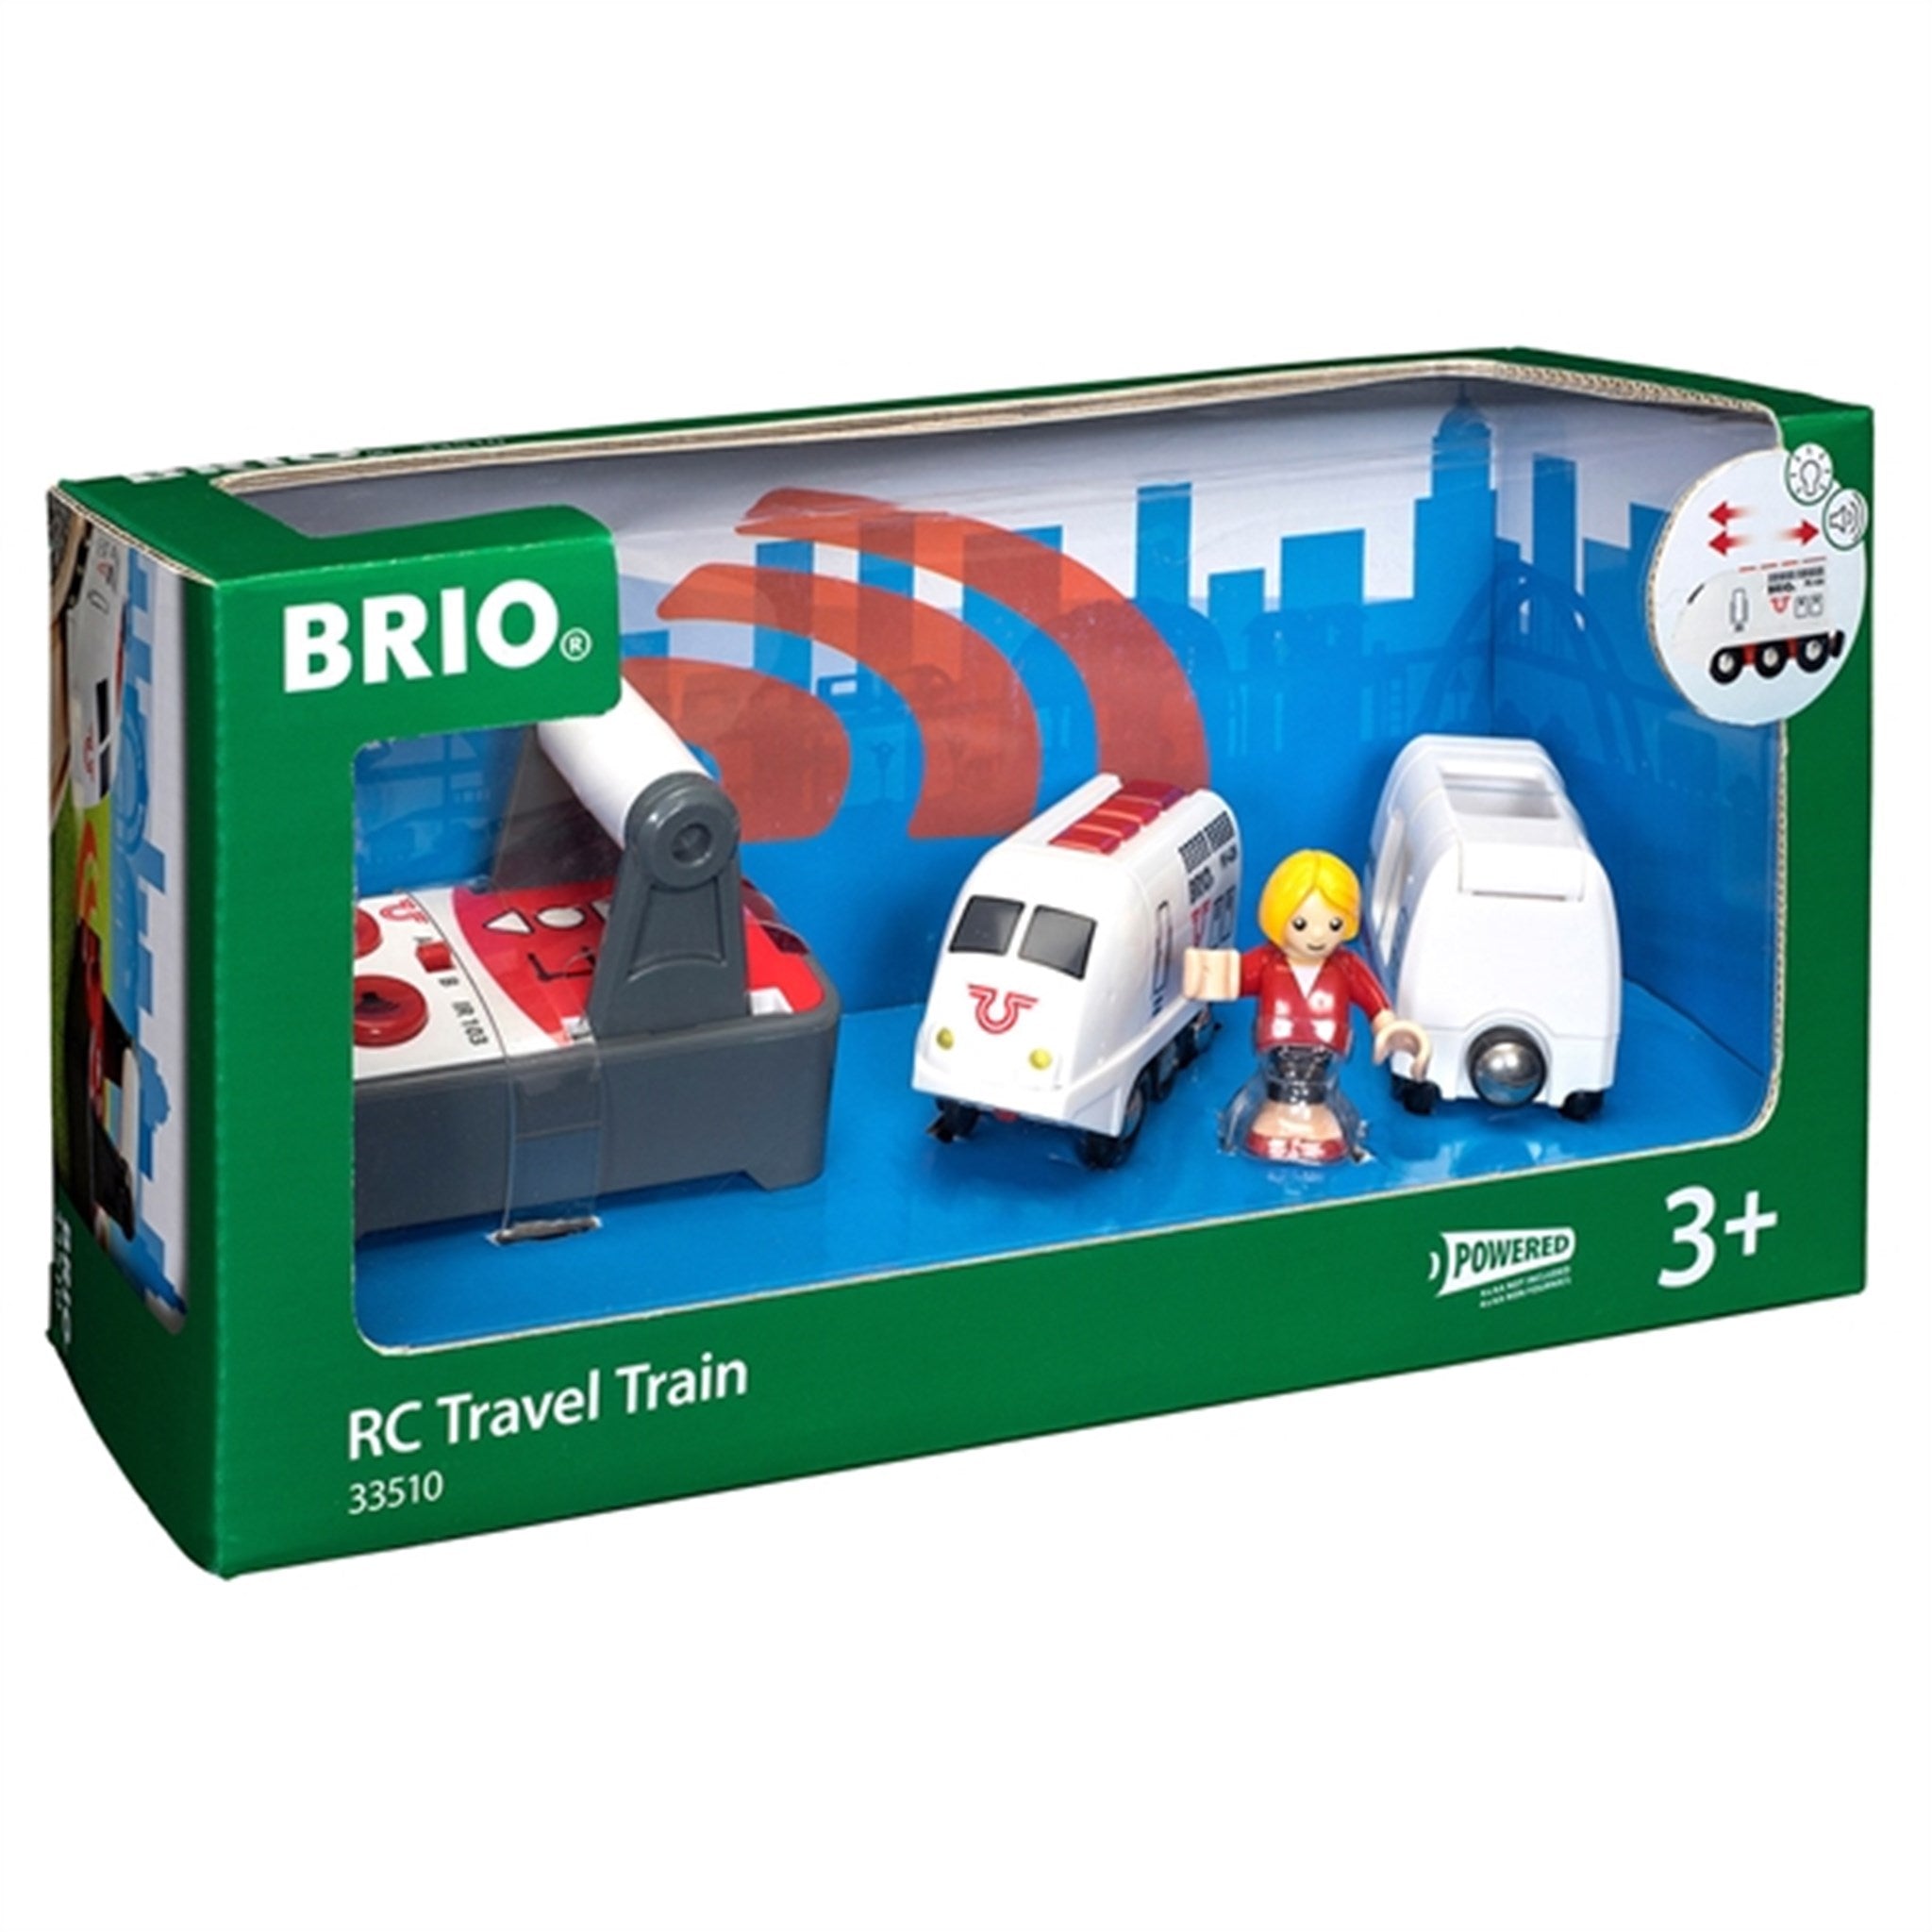 BRIO® Remote Controlled Travel Train 2